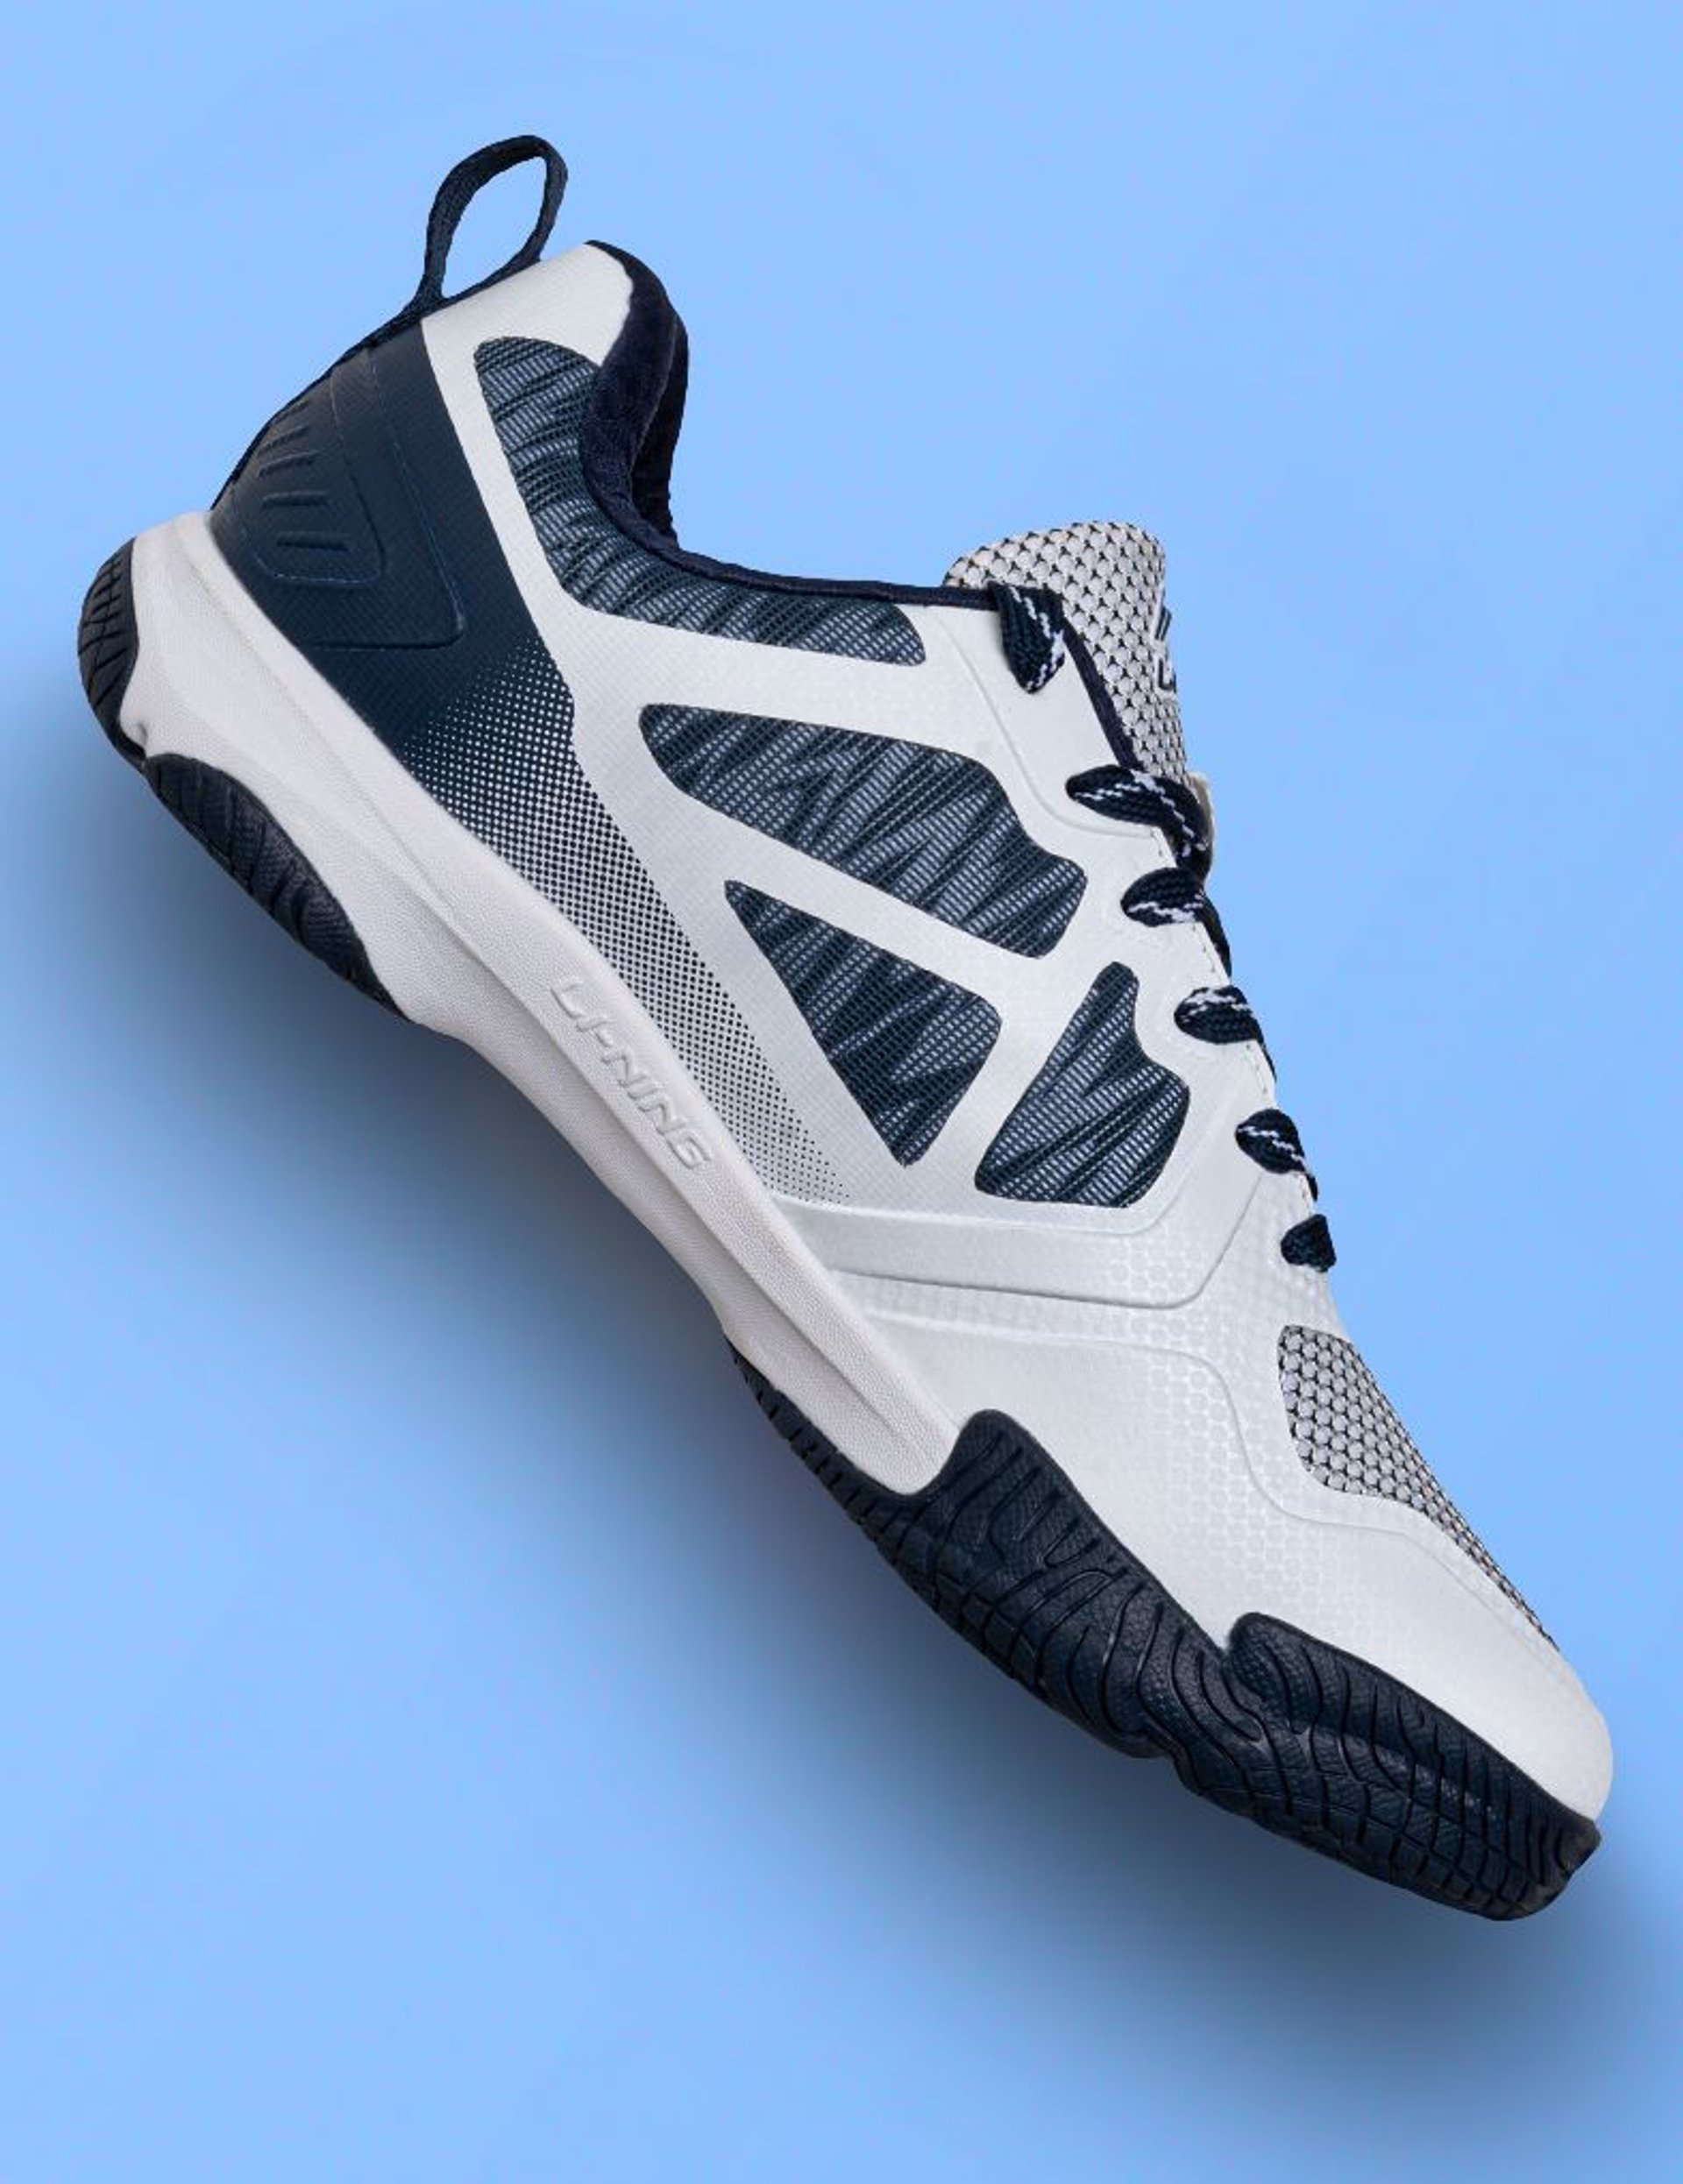 Ranger Lite Z1 Badminton Shoe - Cushion+Stability